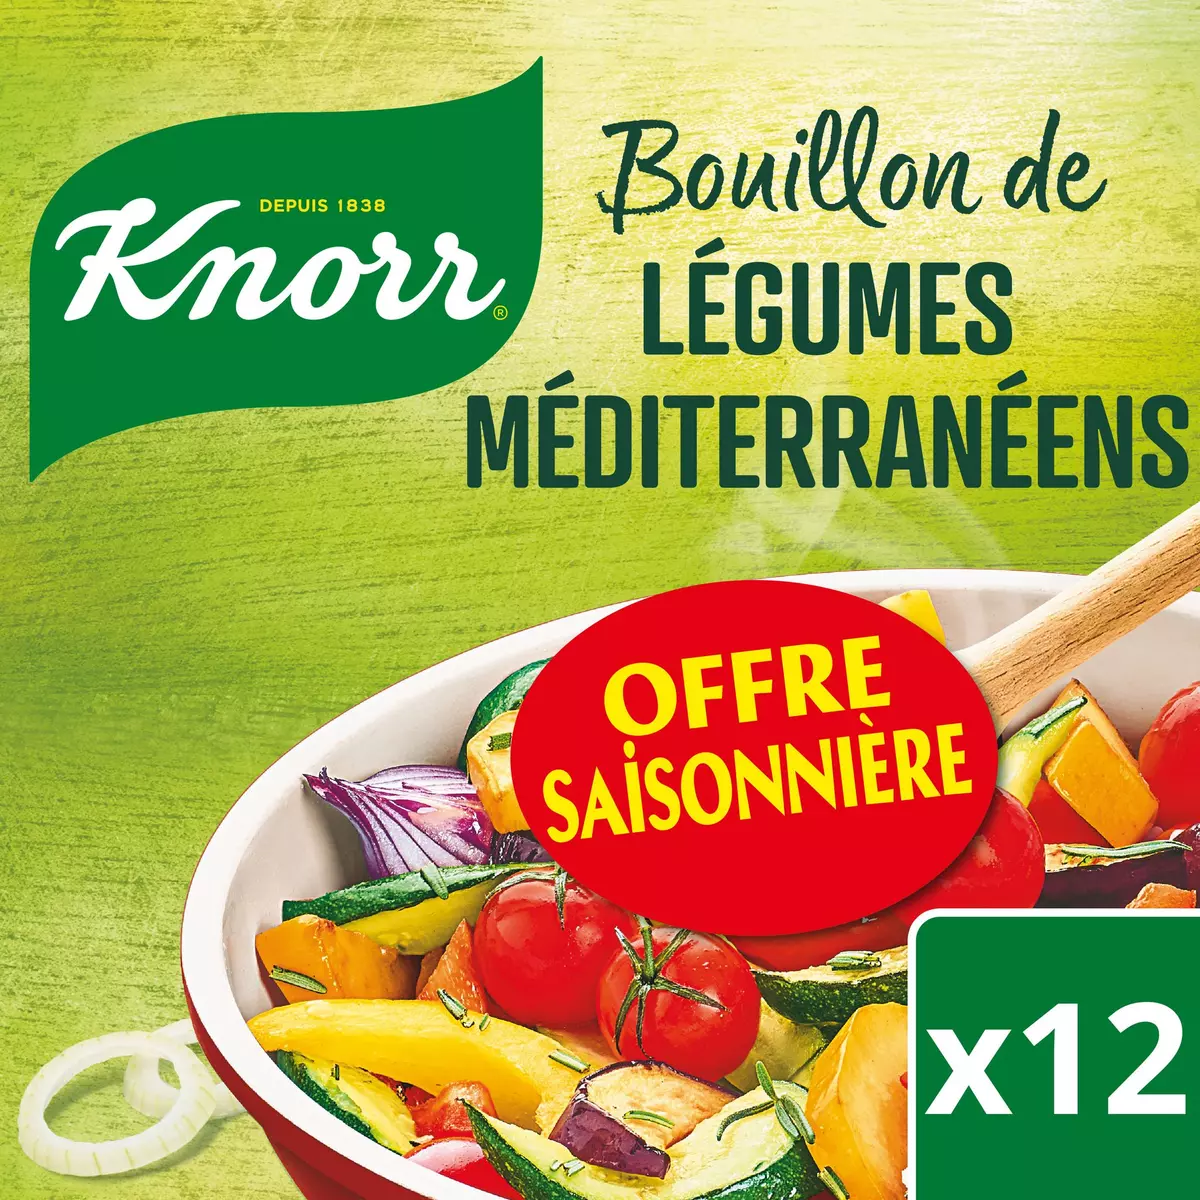 KNORR Bouillon de légumes méditerranéens 12 tablettes